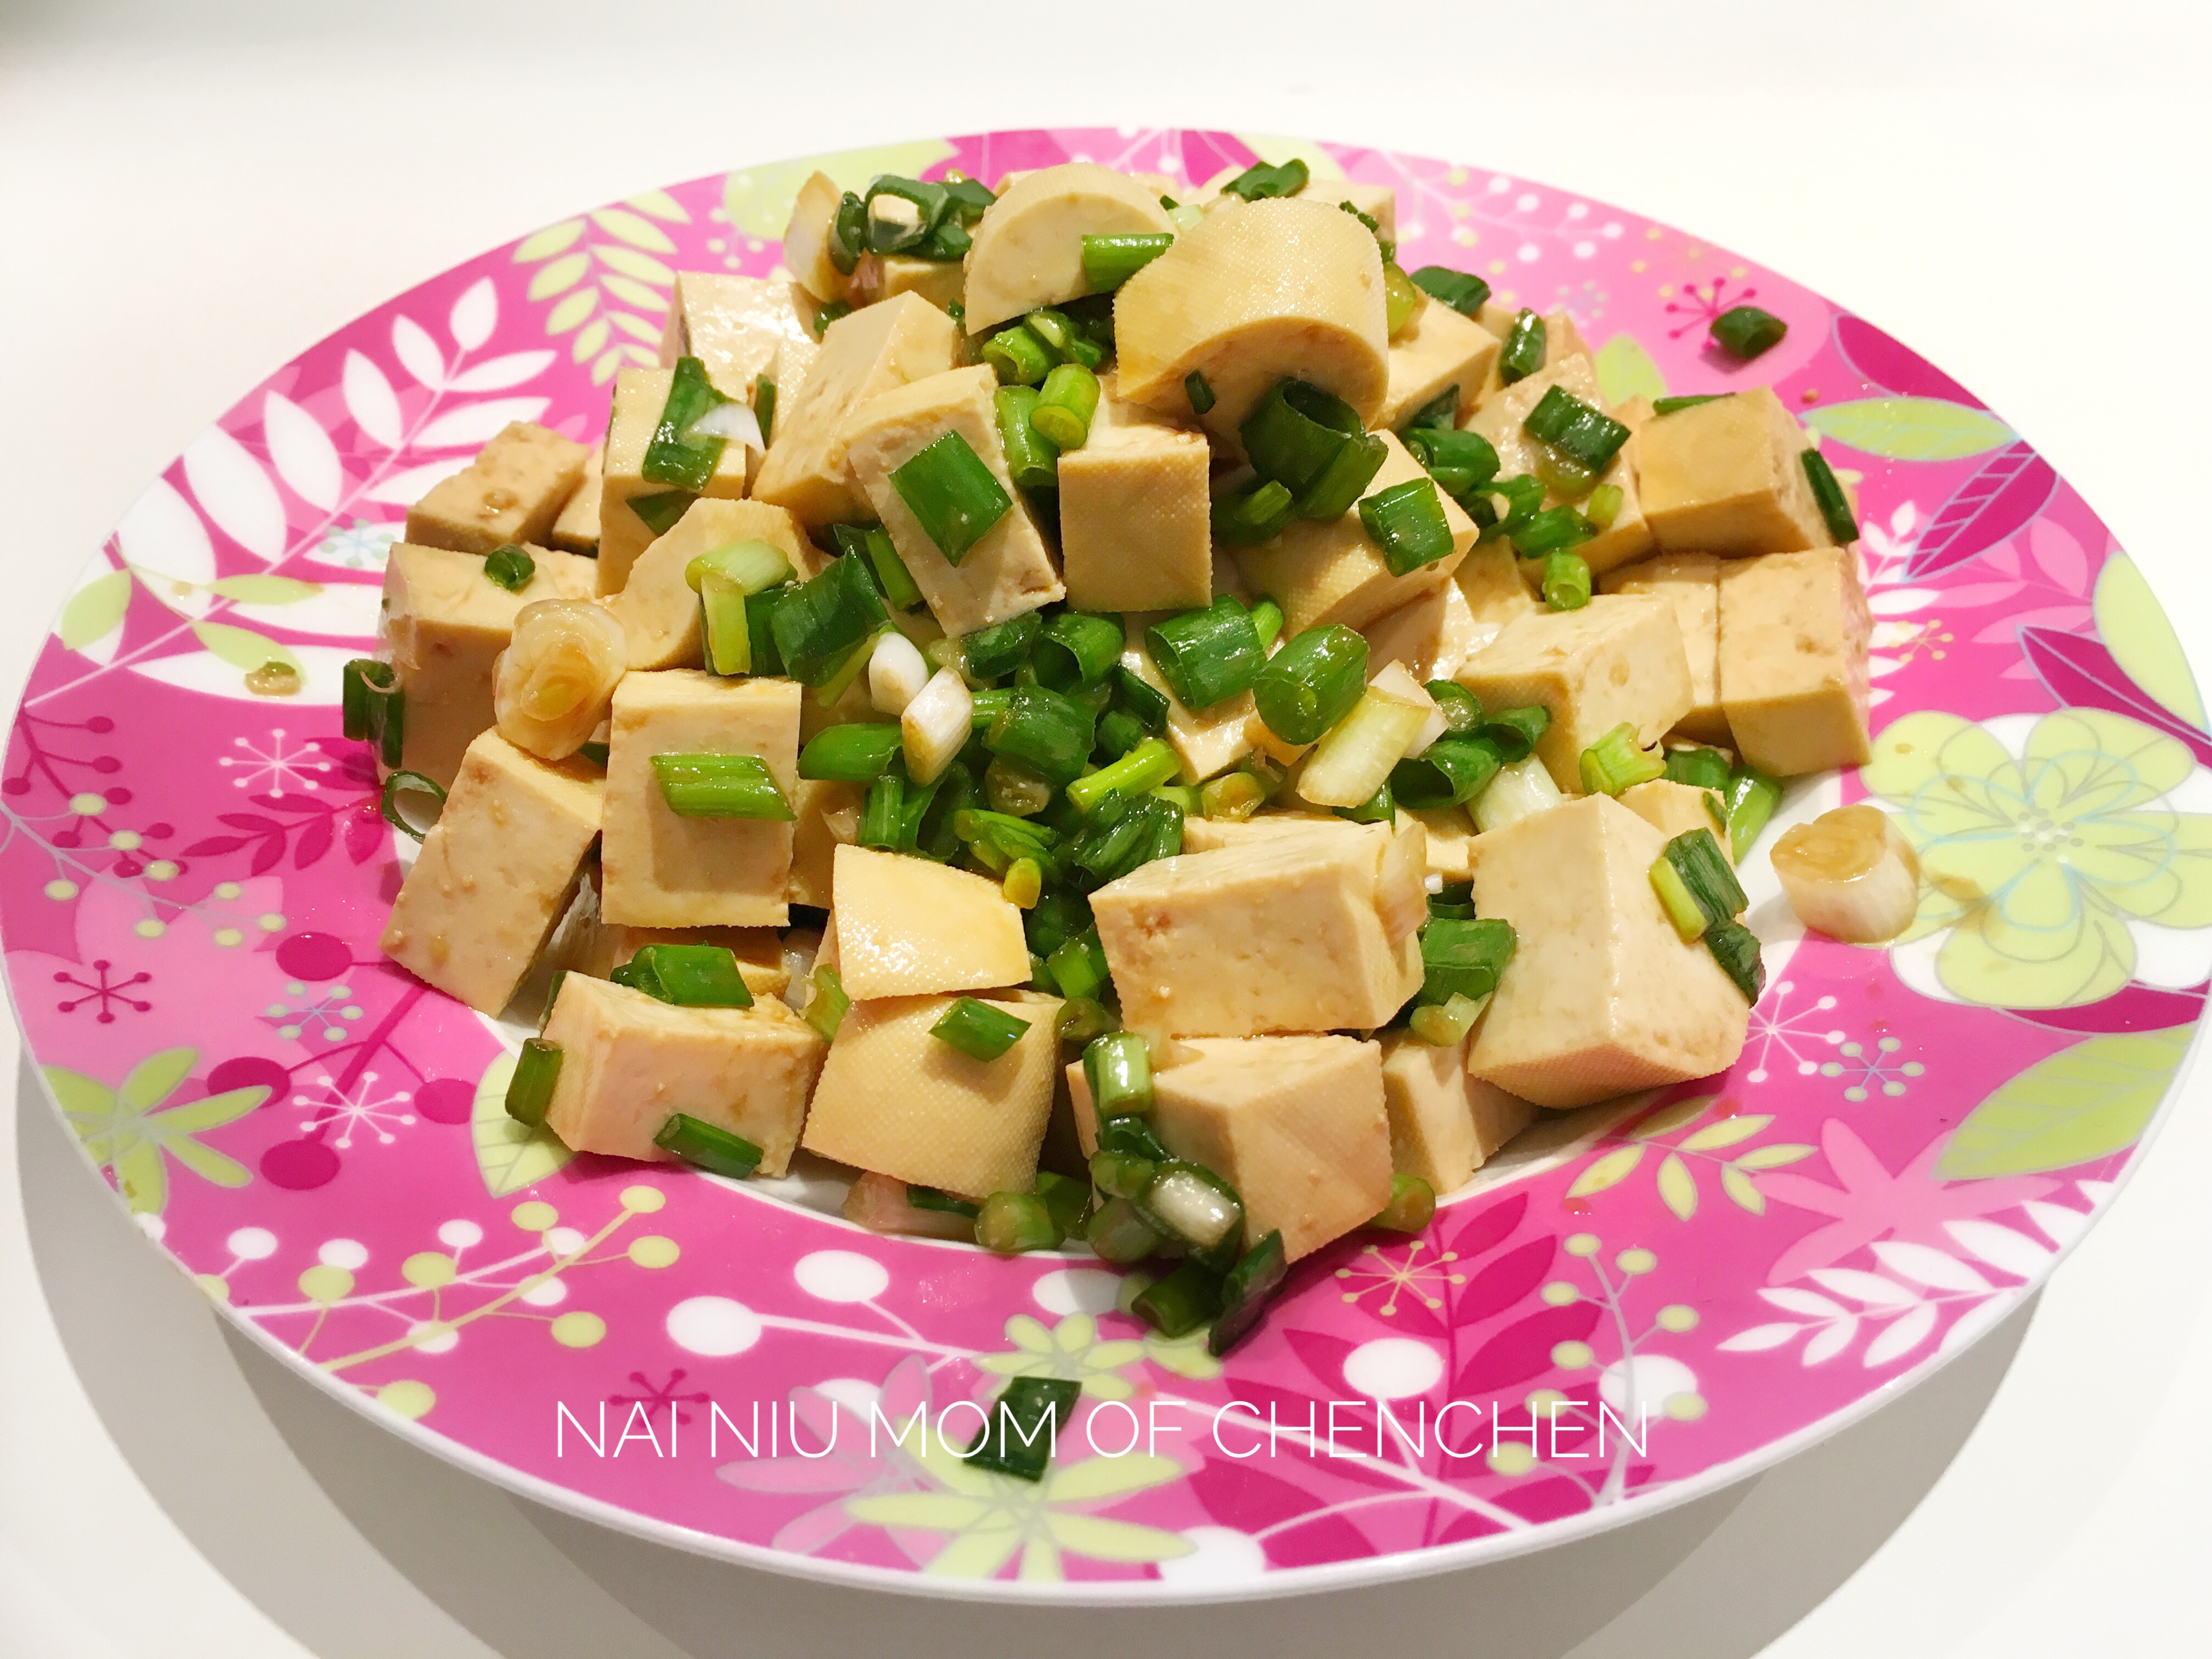 香葱拌豆腐——传说中的“一清二白”